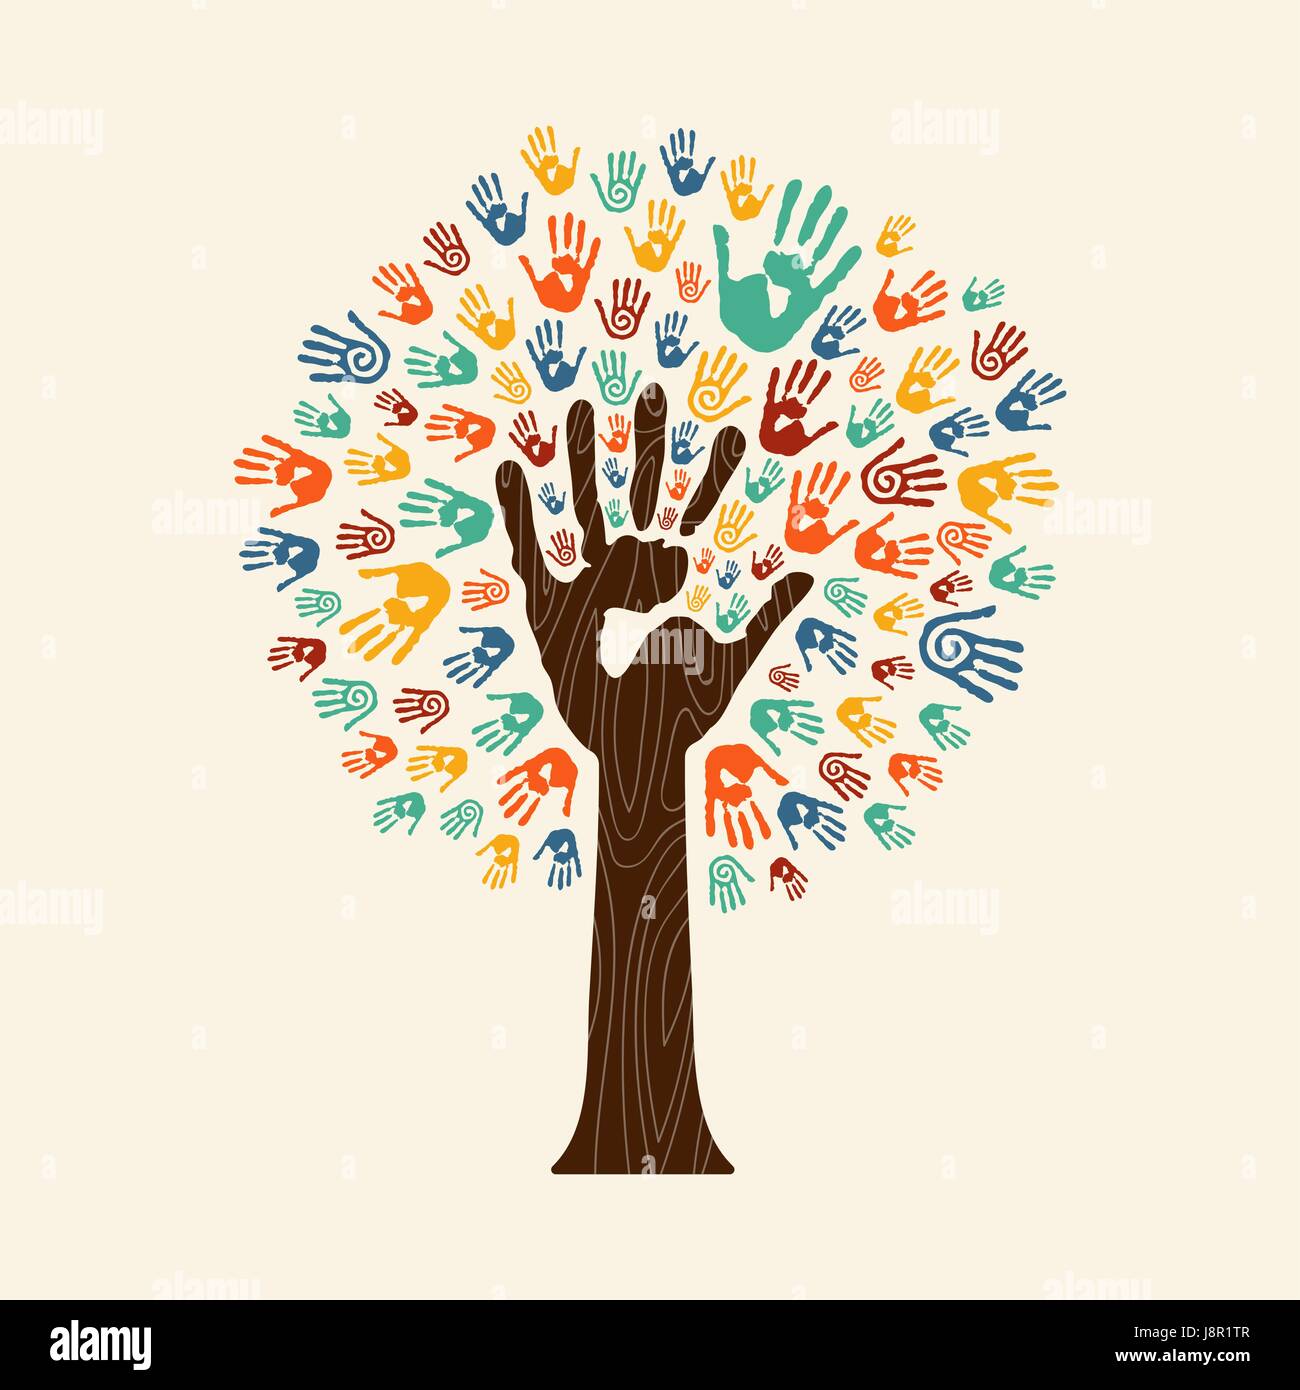 Les droits de l'empreinte de l'arbre avec les mains colorées de groupe ethnique. Communauté aide concept illustration. Vecteur EPS10. Illustration de Vecteur